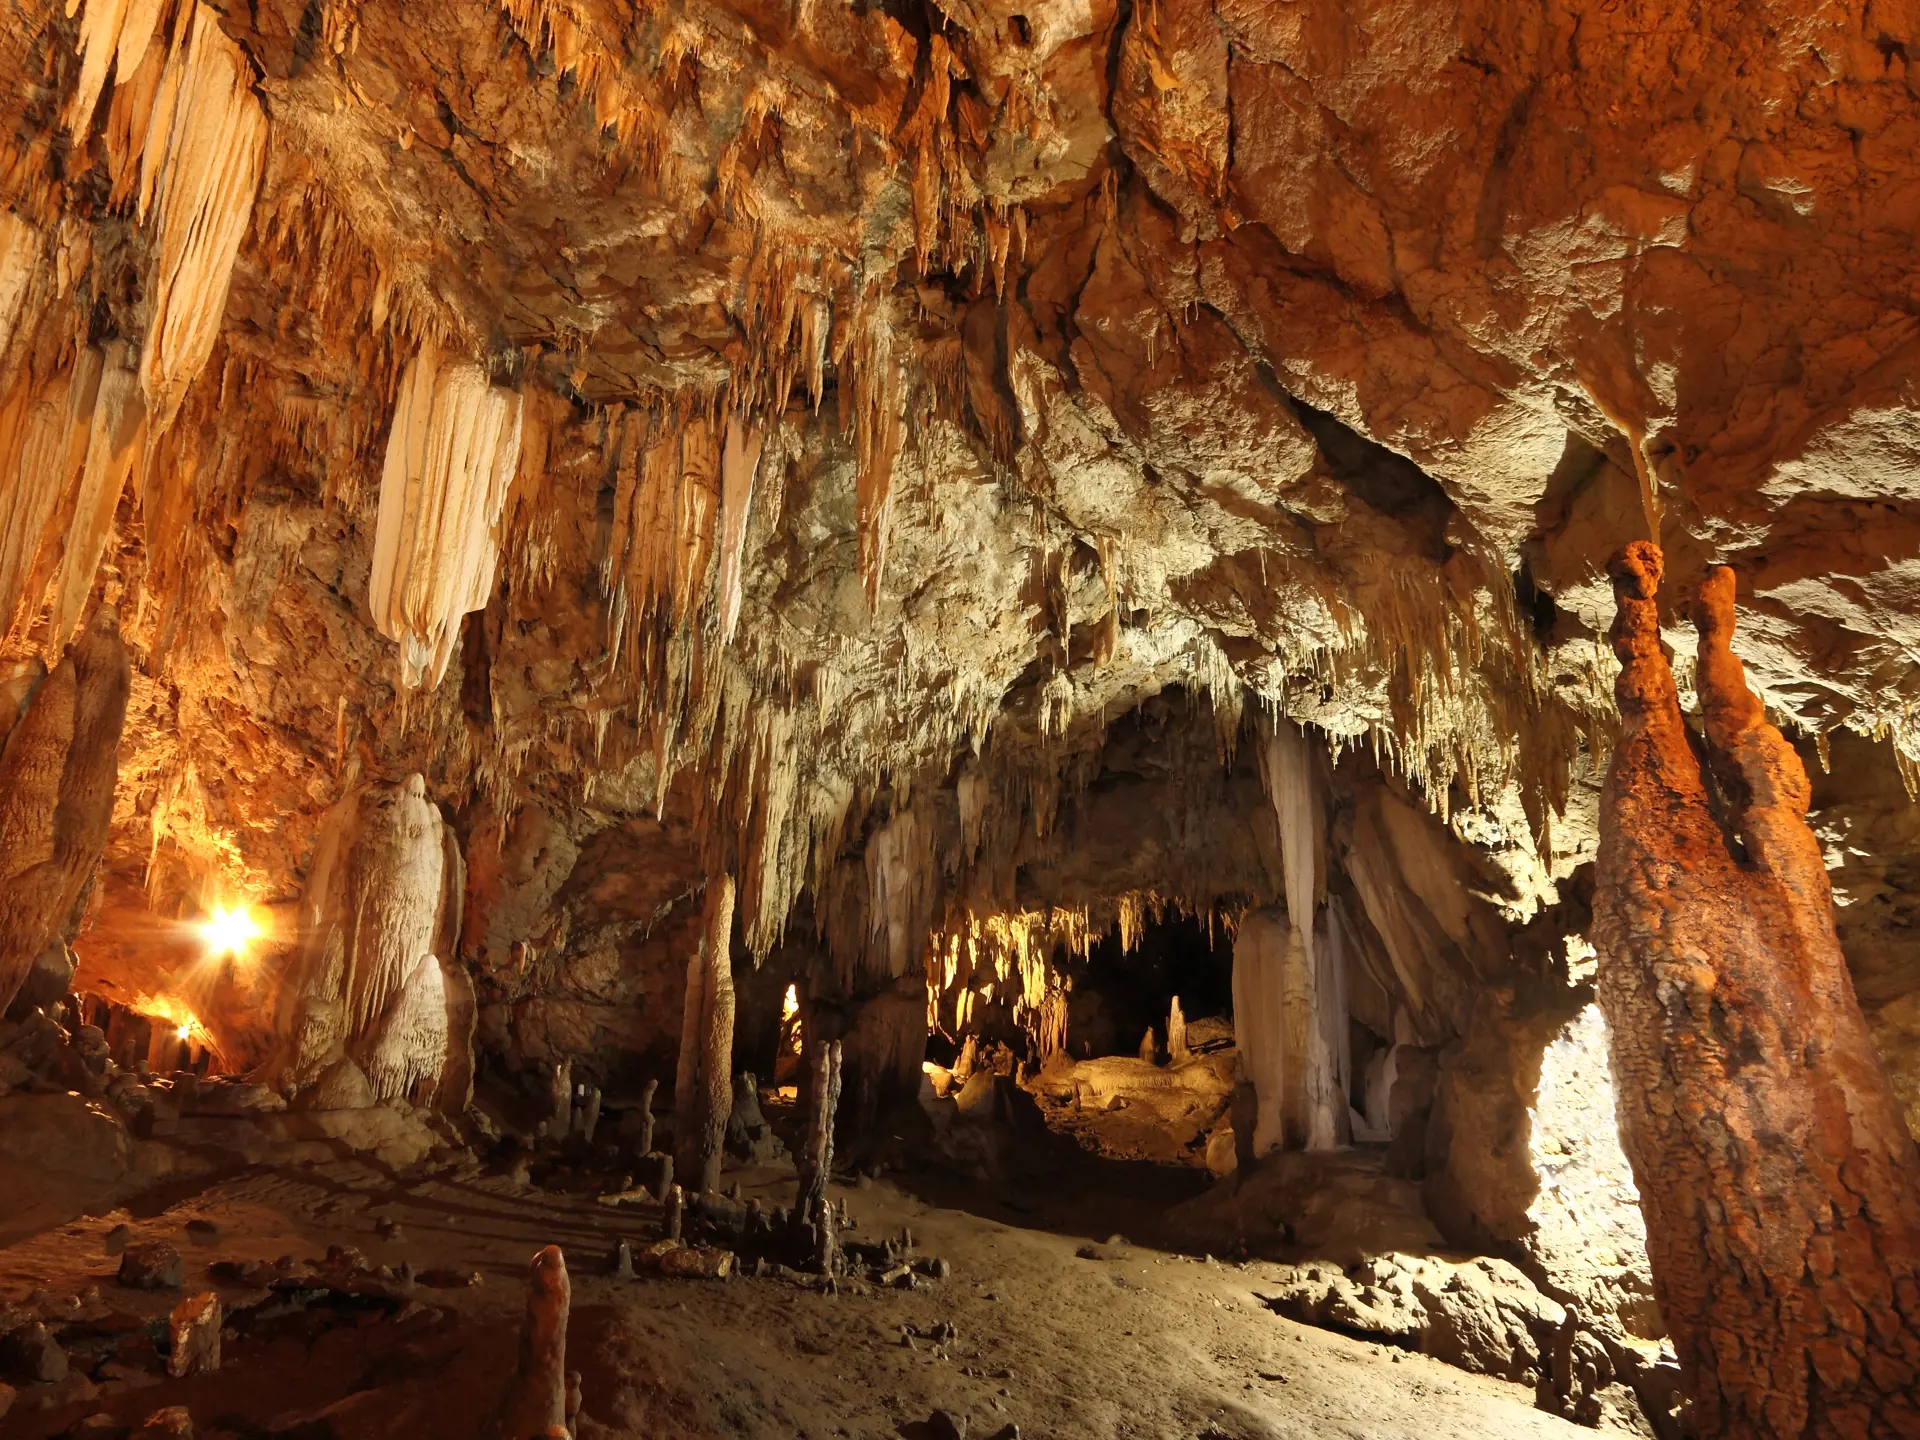 GROTTER - Bjergene i området gemmer på smukke grotter og drypstenshuler, som man blandt andet kan opleve på en af de ture, der arrangeres af Aava Resort & Spa, Check Point Travel